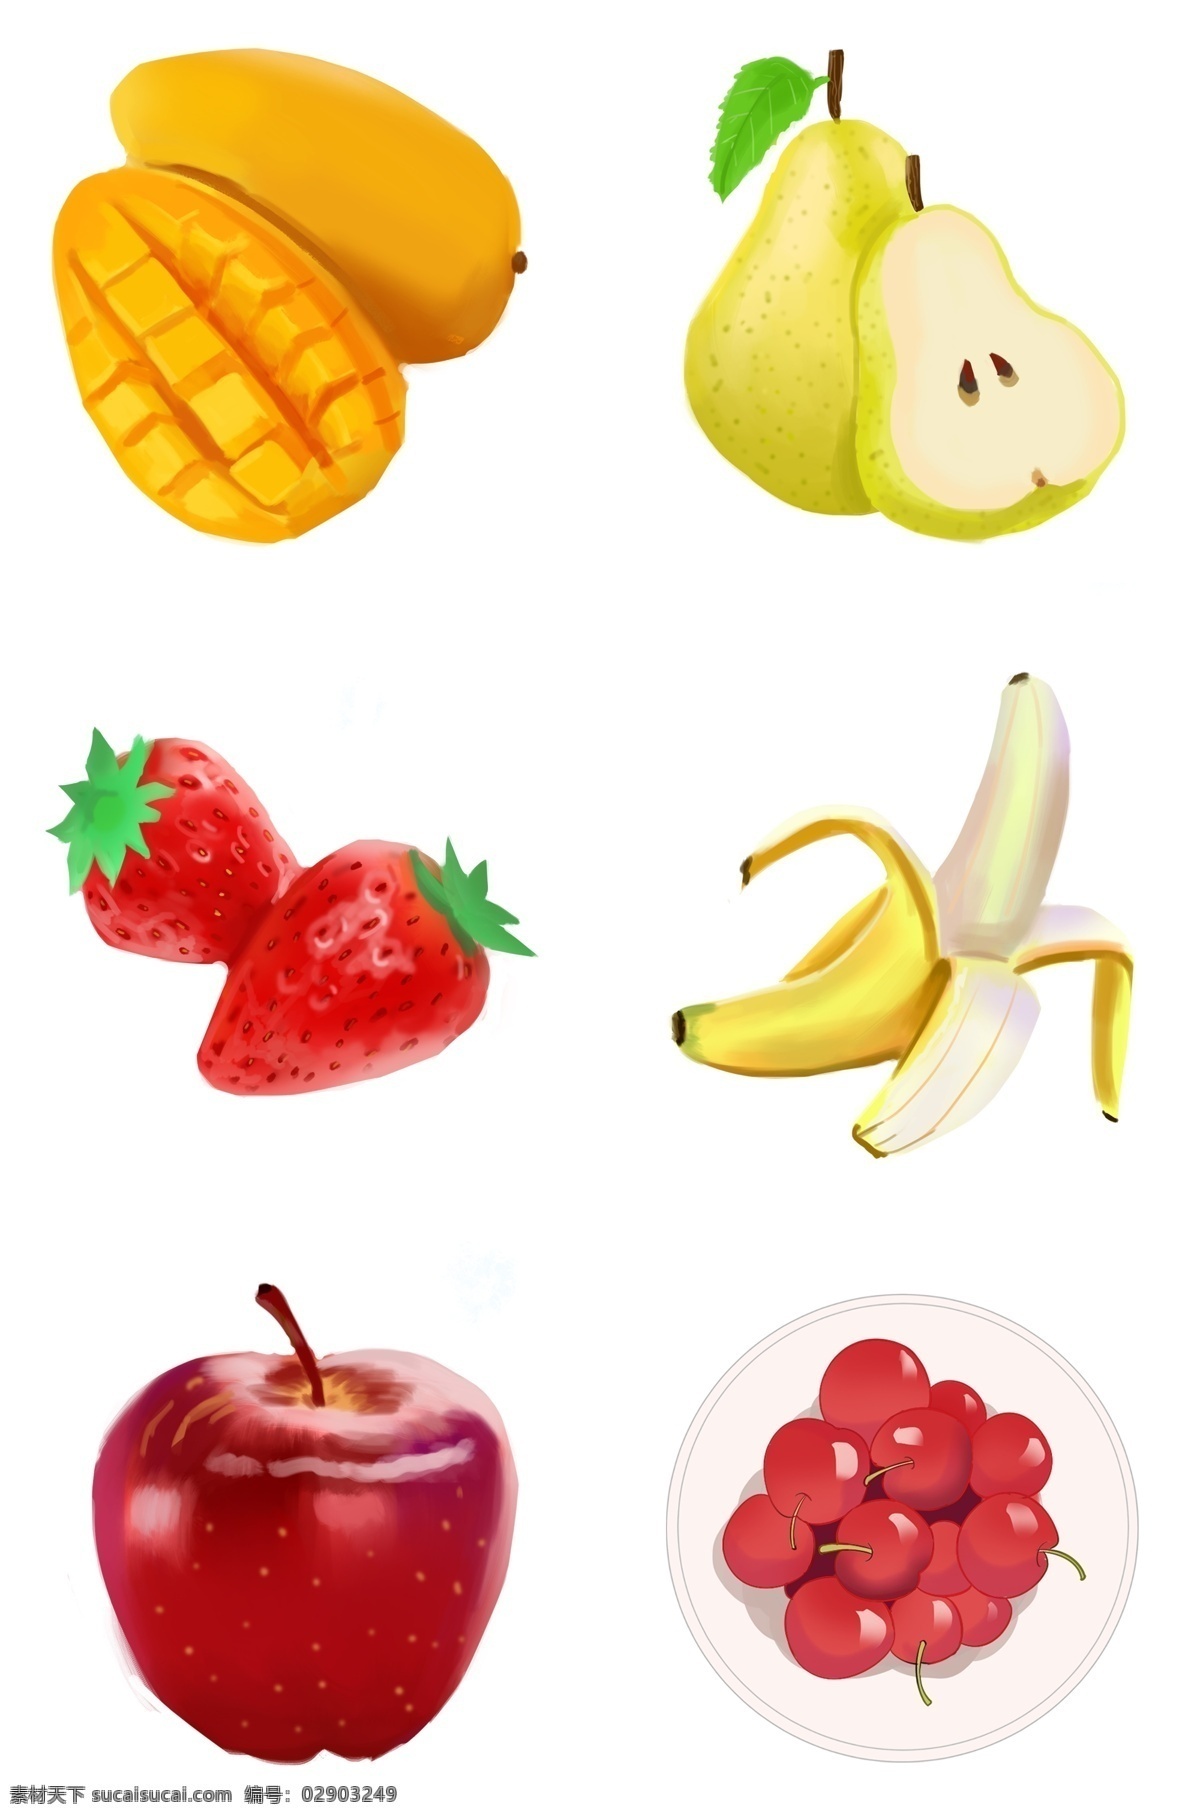 手绘 卡通 水果 系列 梨 草莓 芒果 香蕉苹果 樱桃 插画 卡通水果 手绘水果 夏日水果 新鲜水果 新鲜 香蕉 苹果 食物